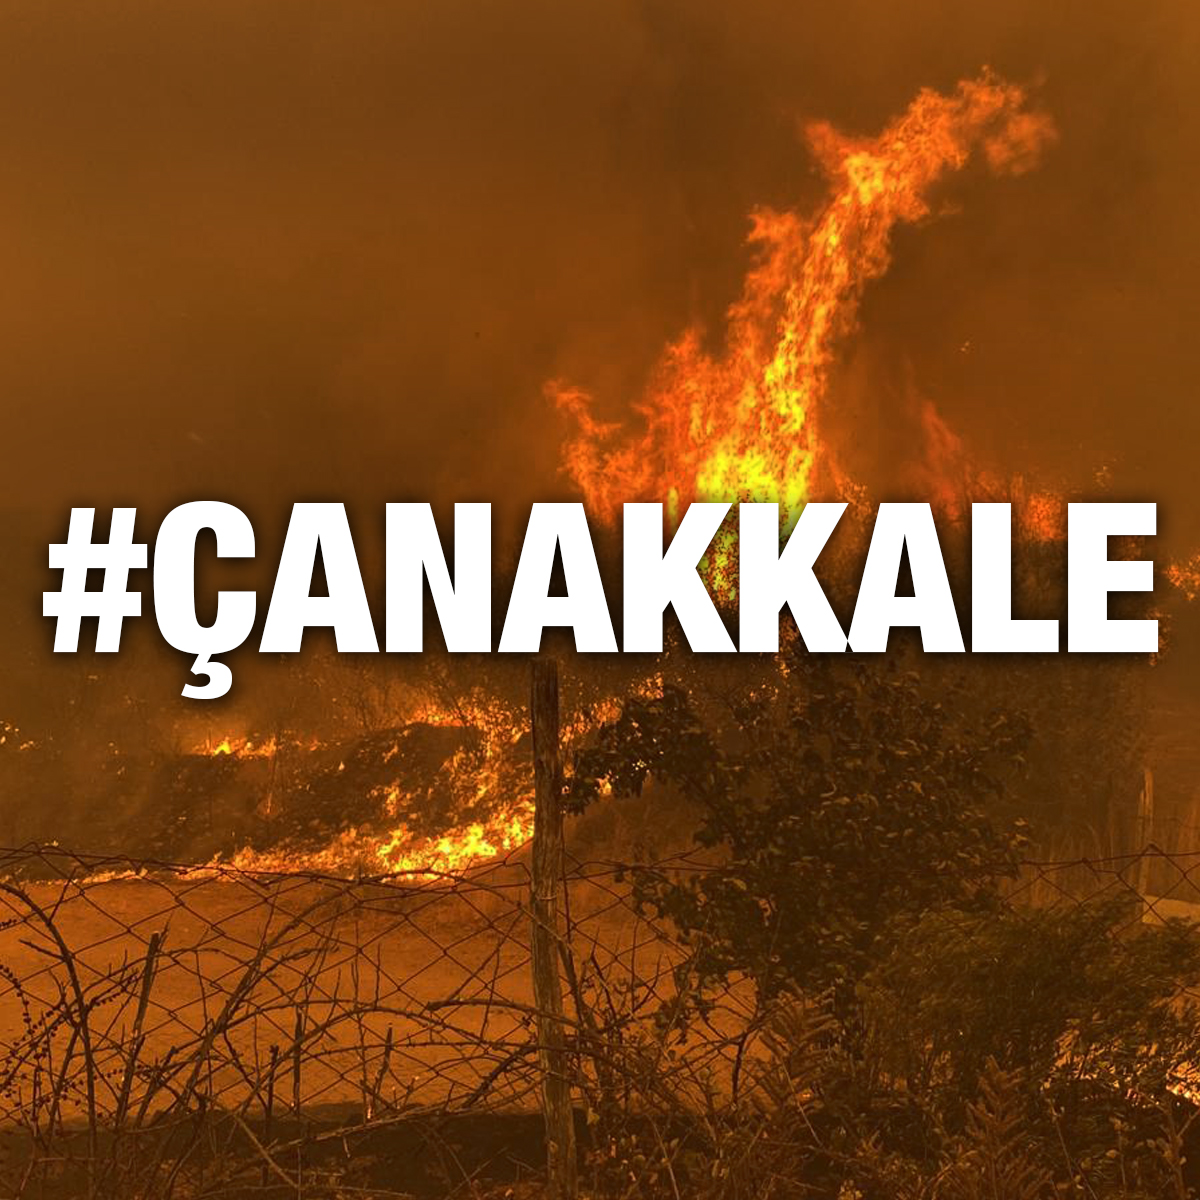 Çanakkale'de merkeze bağlı Kayadere köyü yakınındaki ormanlık alanda çıkan yangın rüzgarın etkisiyle hızla yayıldı. Birçok köy boşaltıldı. Kalbimiz Çanakkale'de, yangından etkilenen tüm canlarda ve yangını kontrol altına almak için canla başla mücadele edenlerde. #Çanakkale